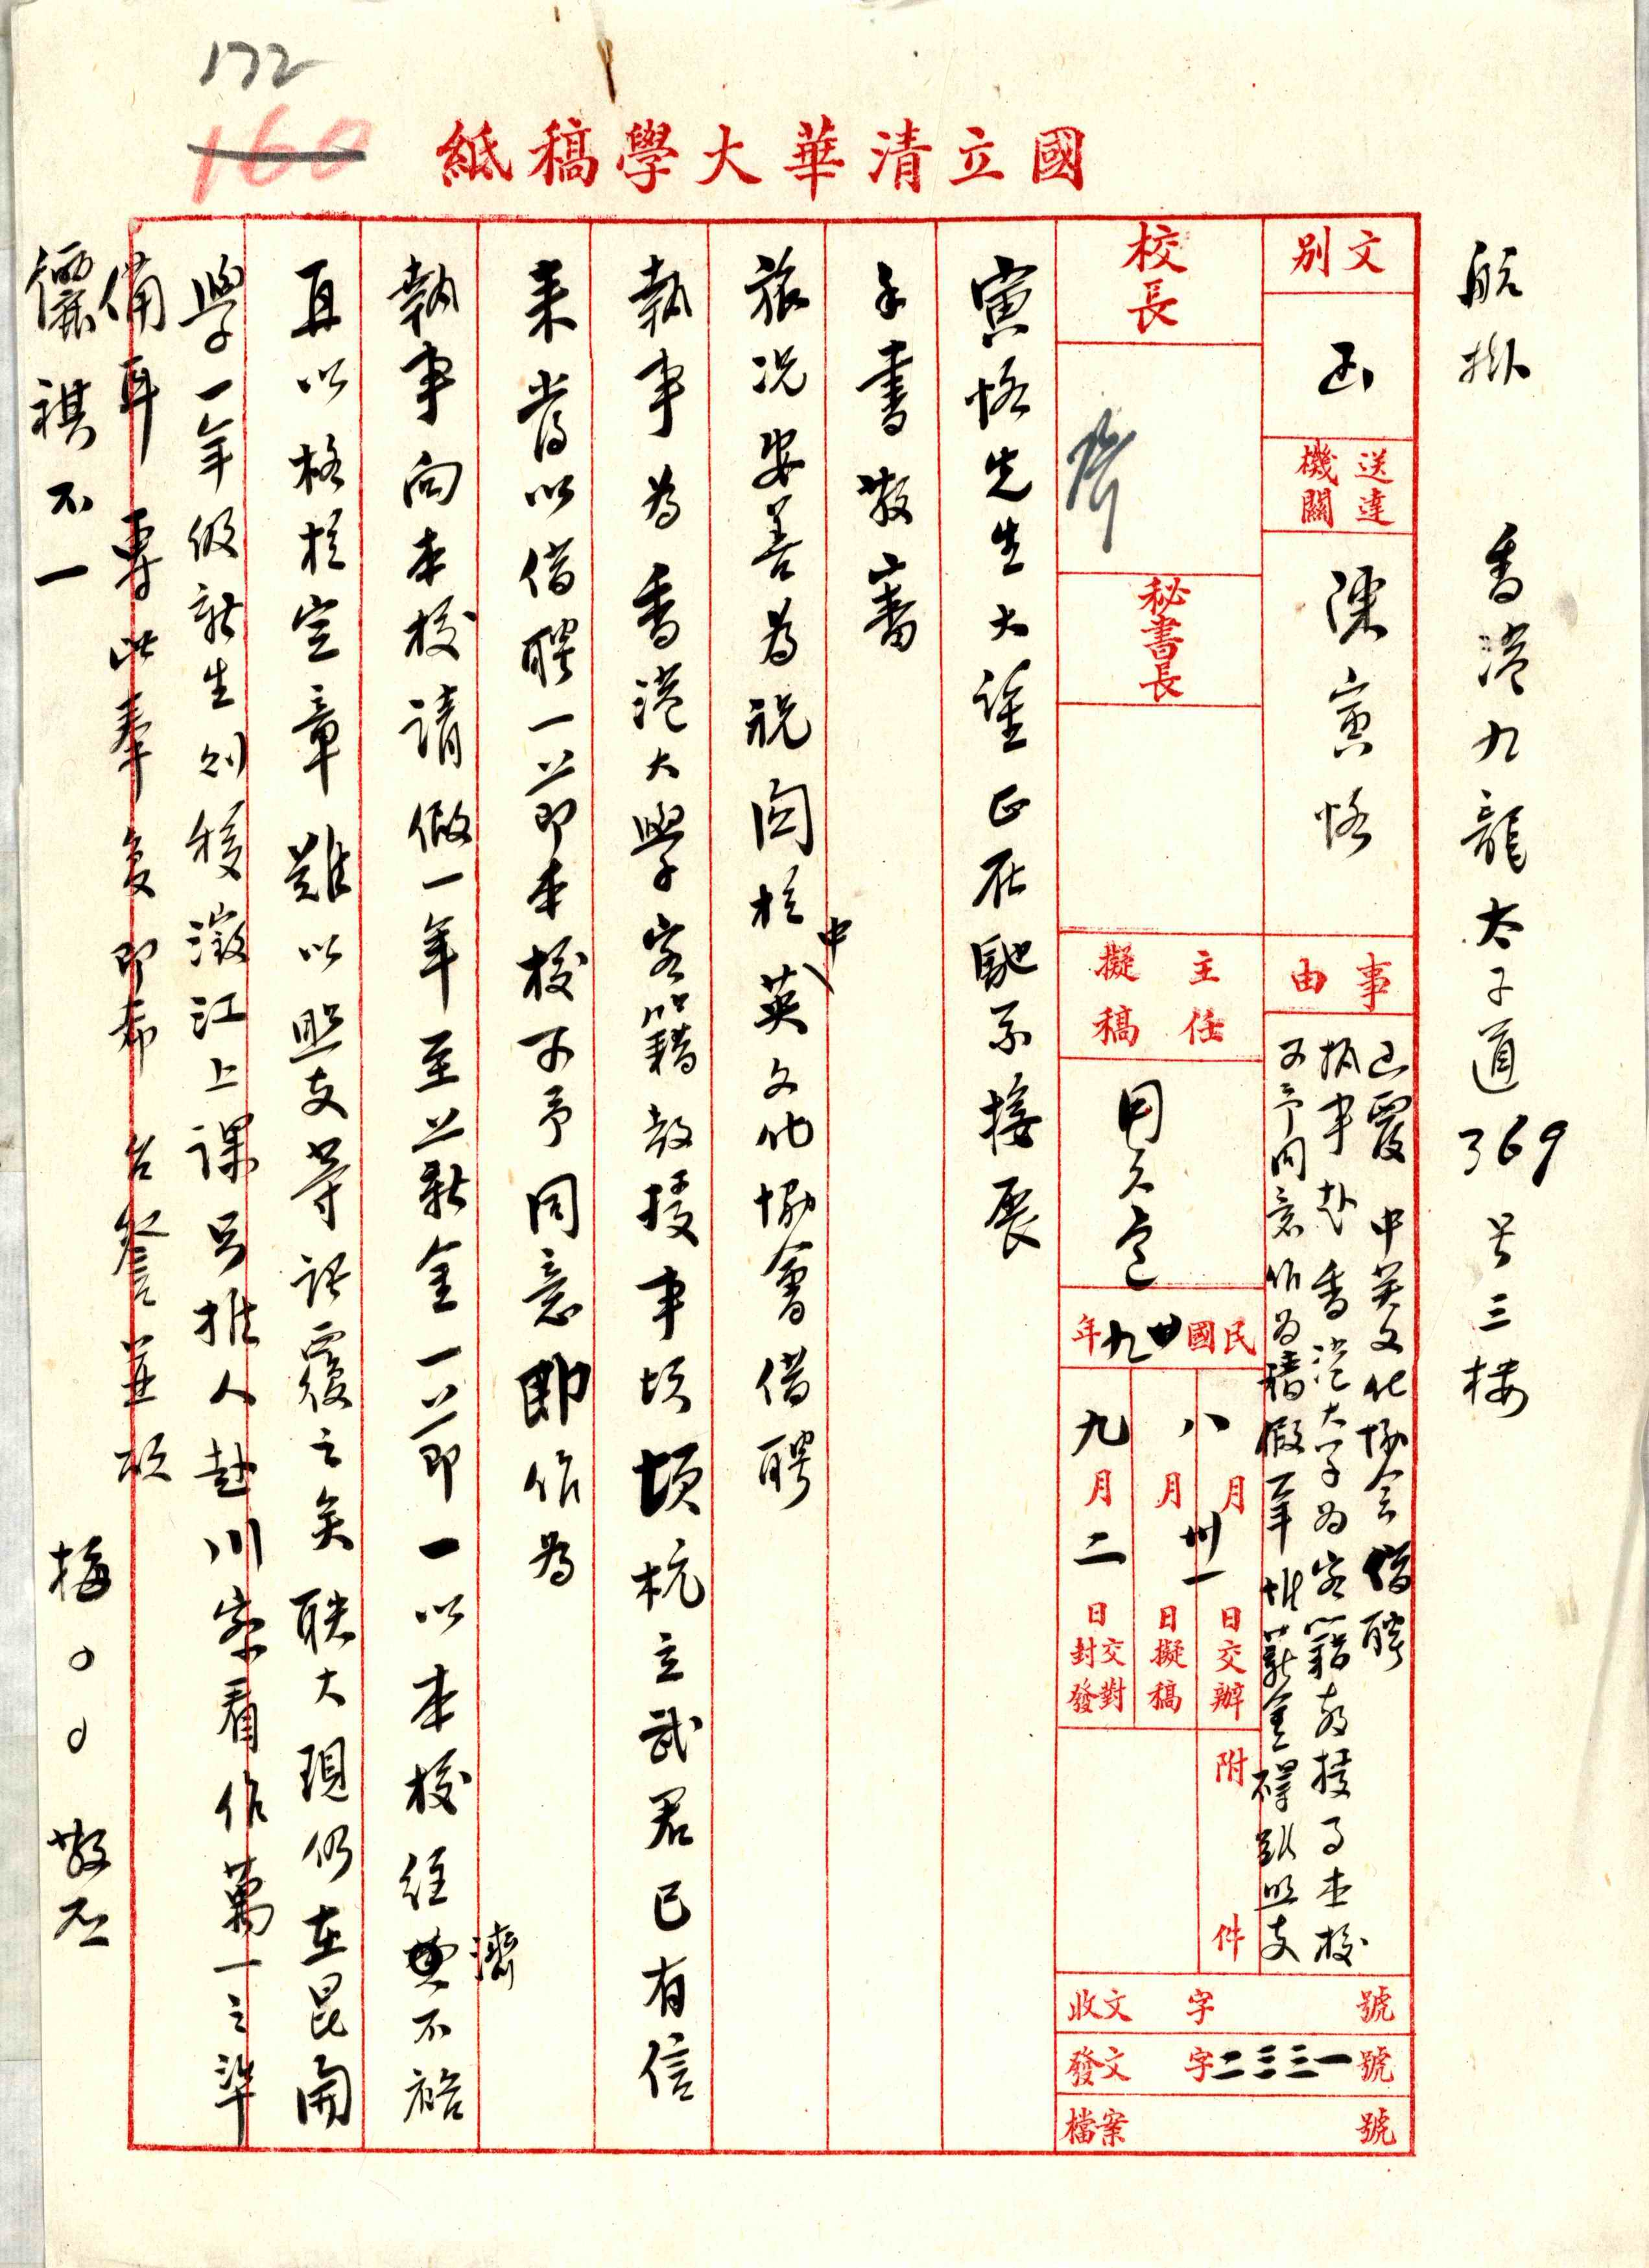 國立清華大學同意陳寅恪休假赴香港大學任教之信函紀錄，1940年9月2日。清華大學校史館藏